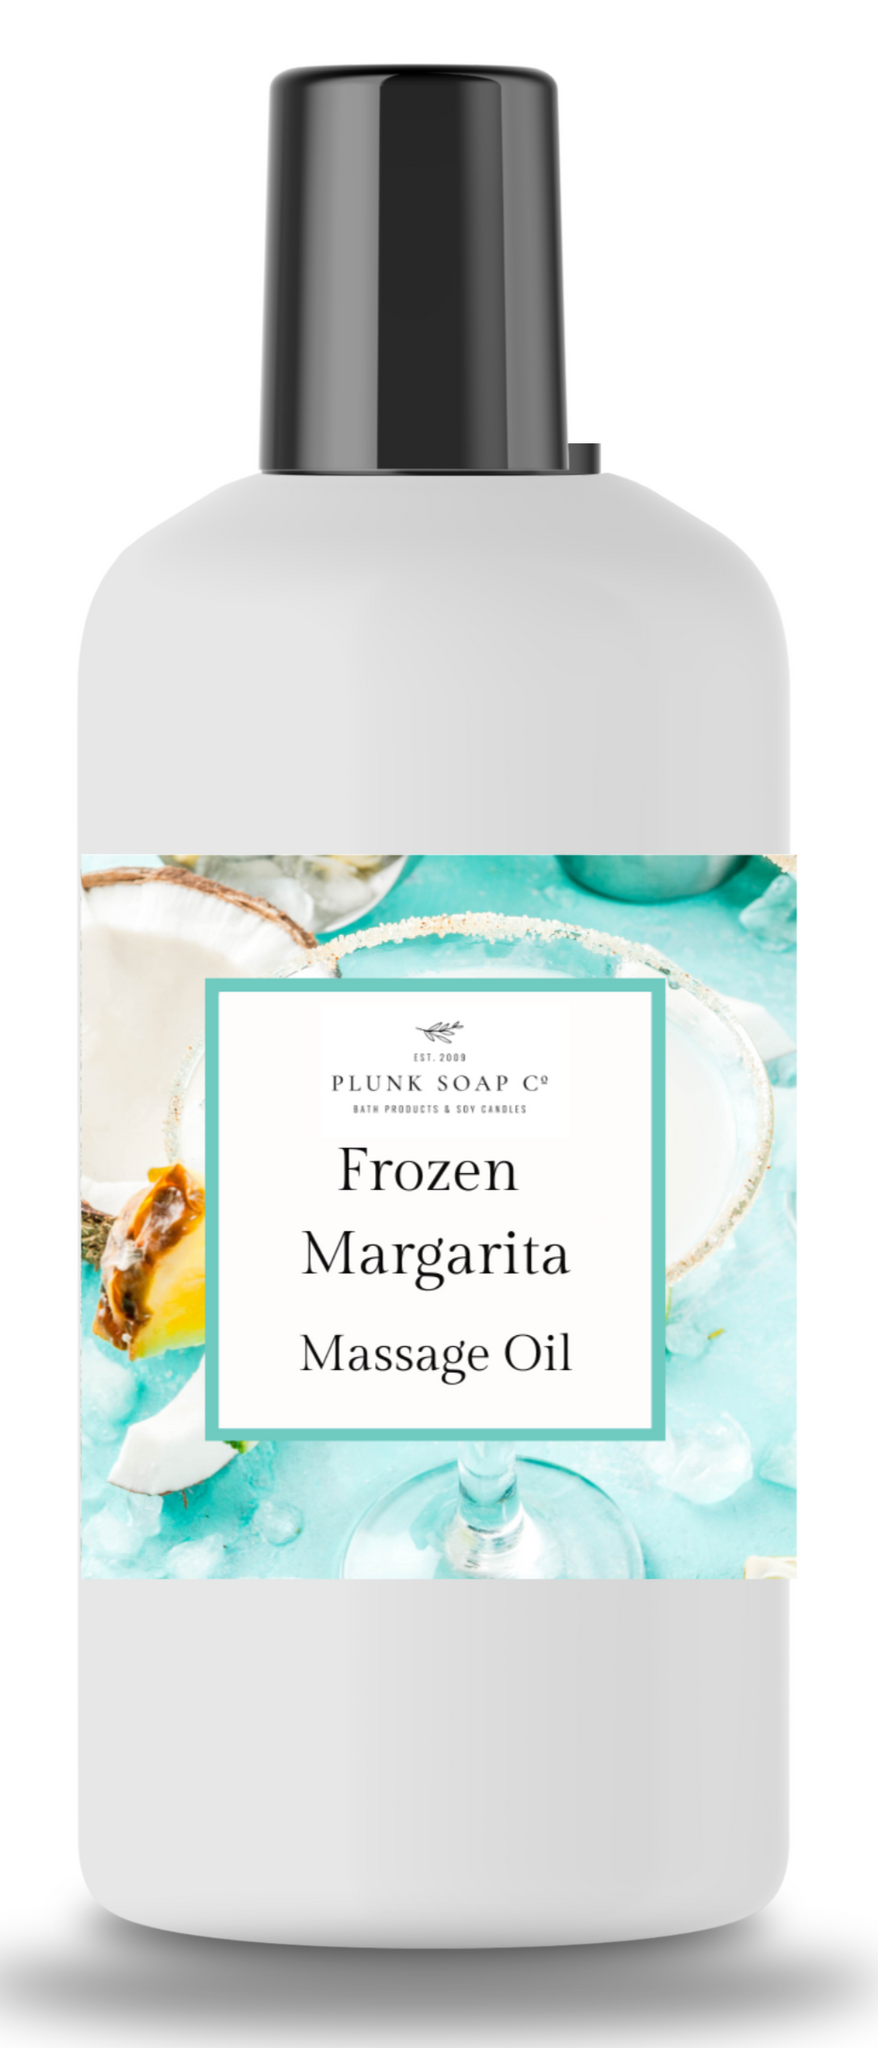 Frozen Margarita scented massage oil